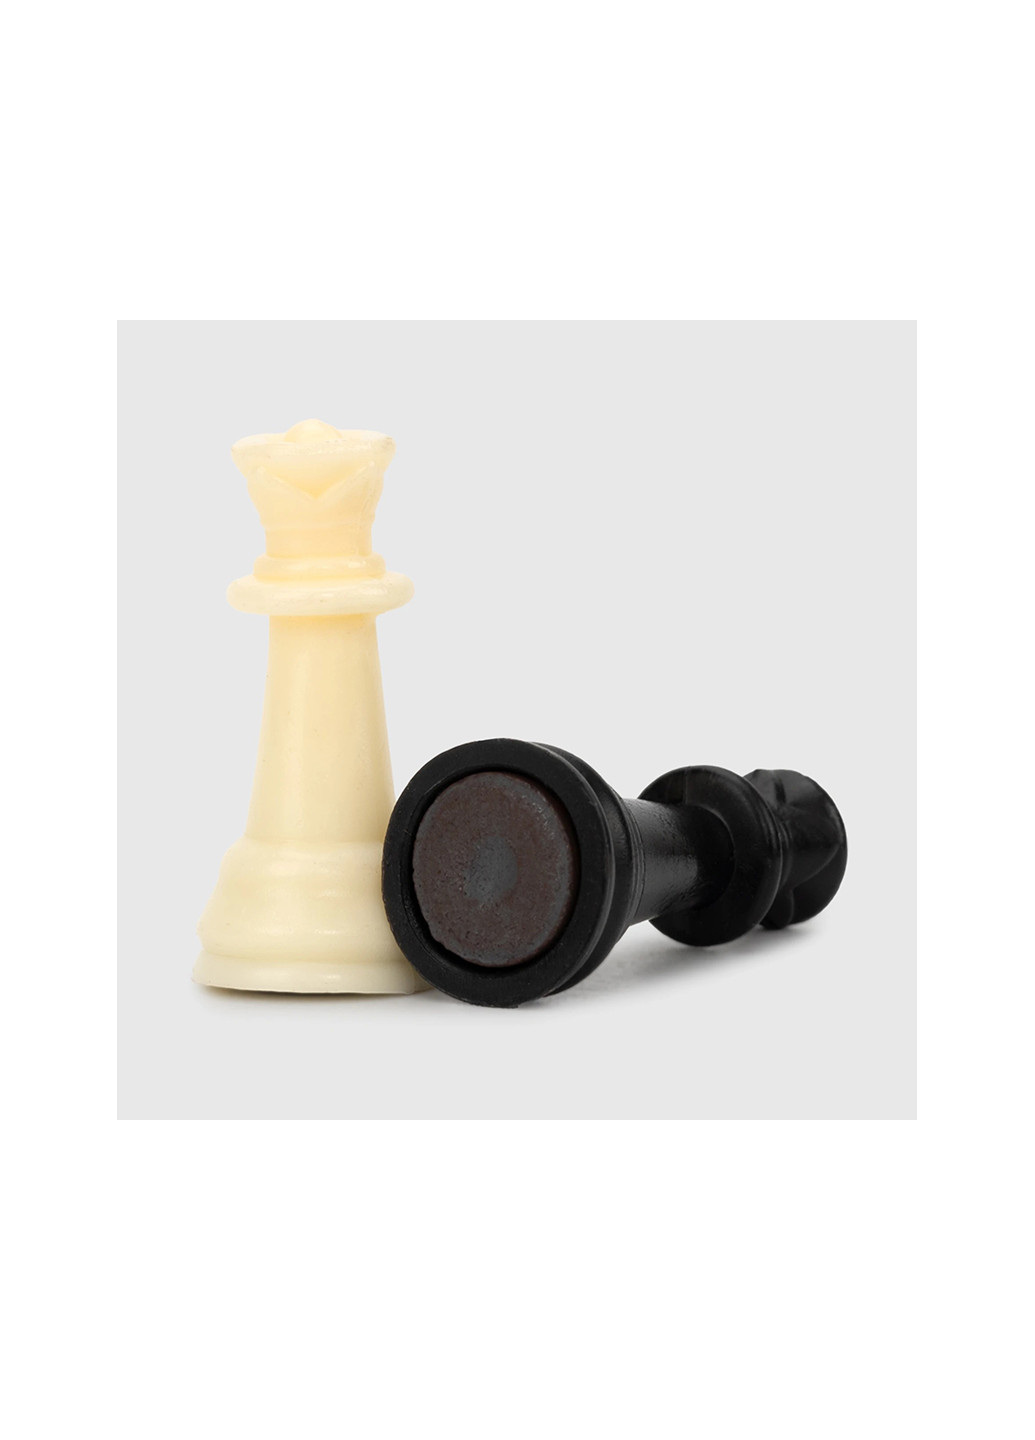 Шахматы магнитные 3в1 1818 No Brand (275997316)